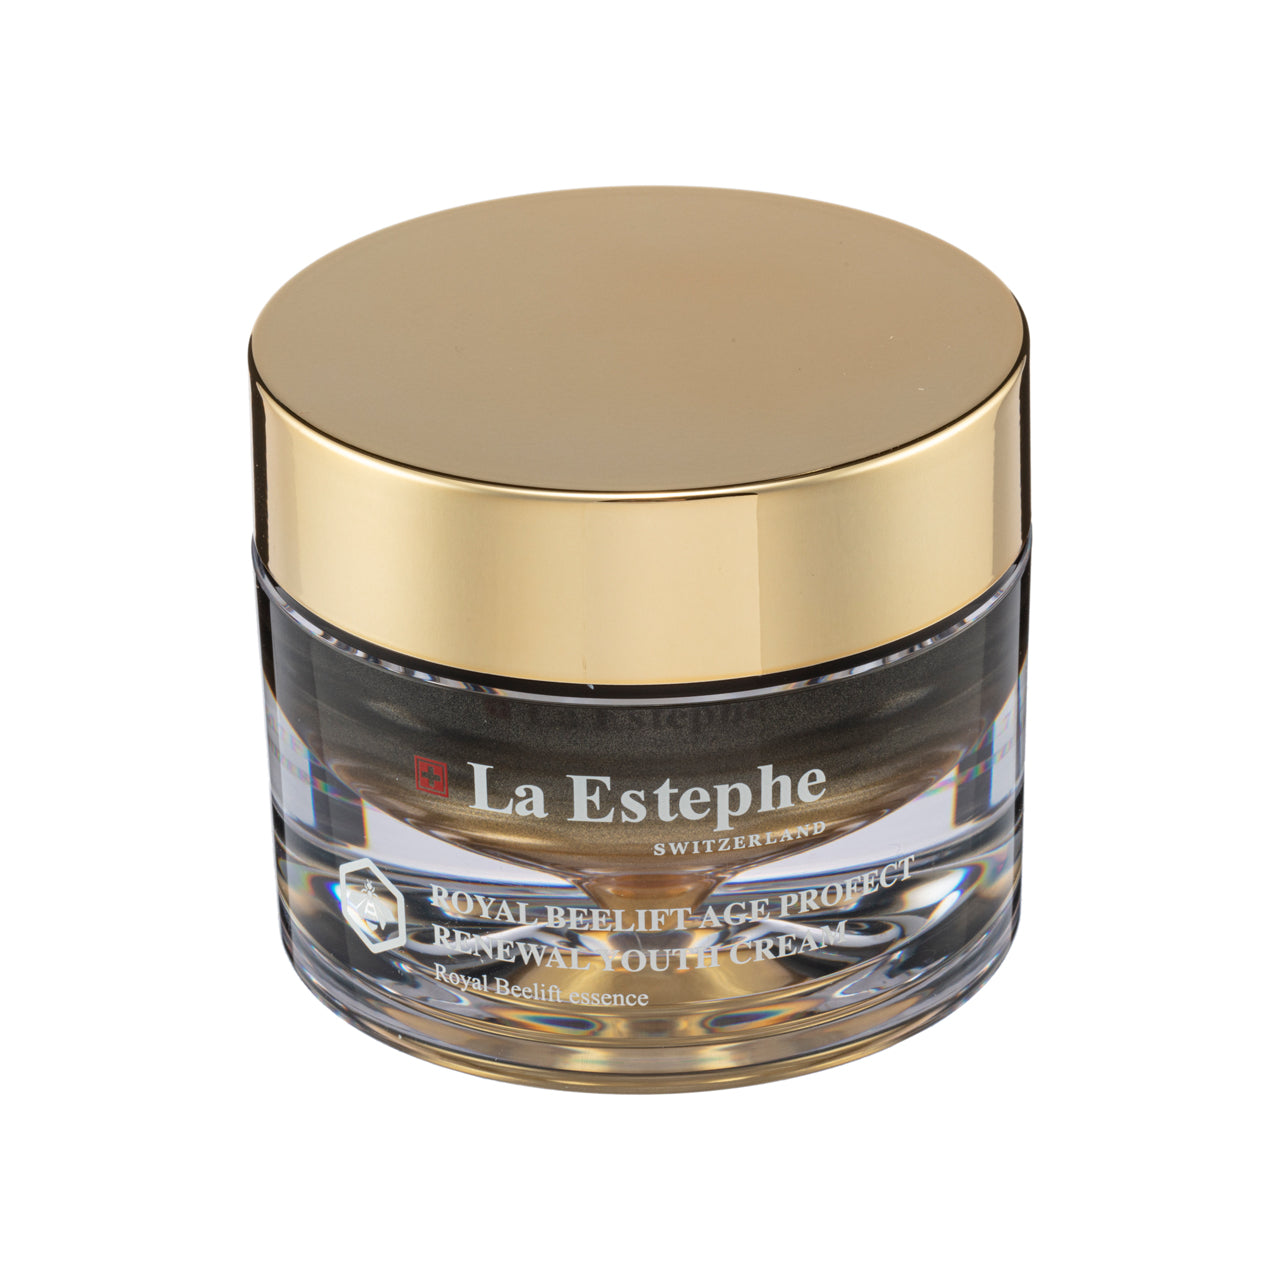 La Estephe Royal Beelift Age Profect Renewal Youth Cream 50G | Sasa Global eShop